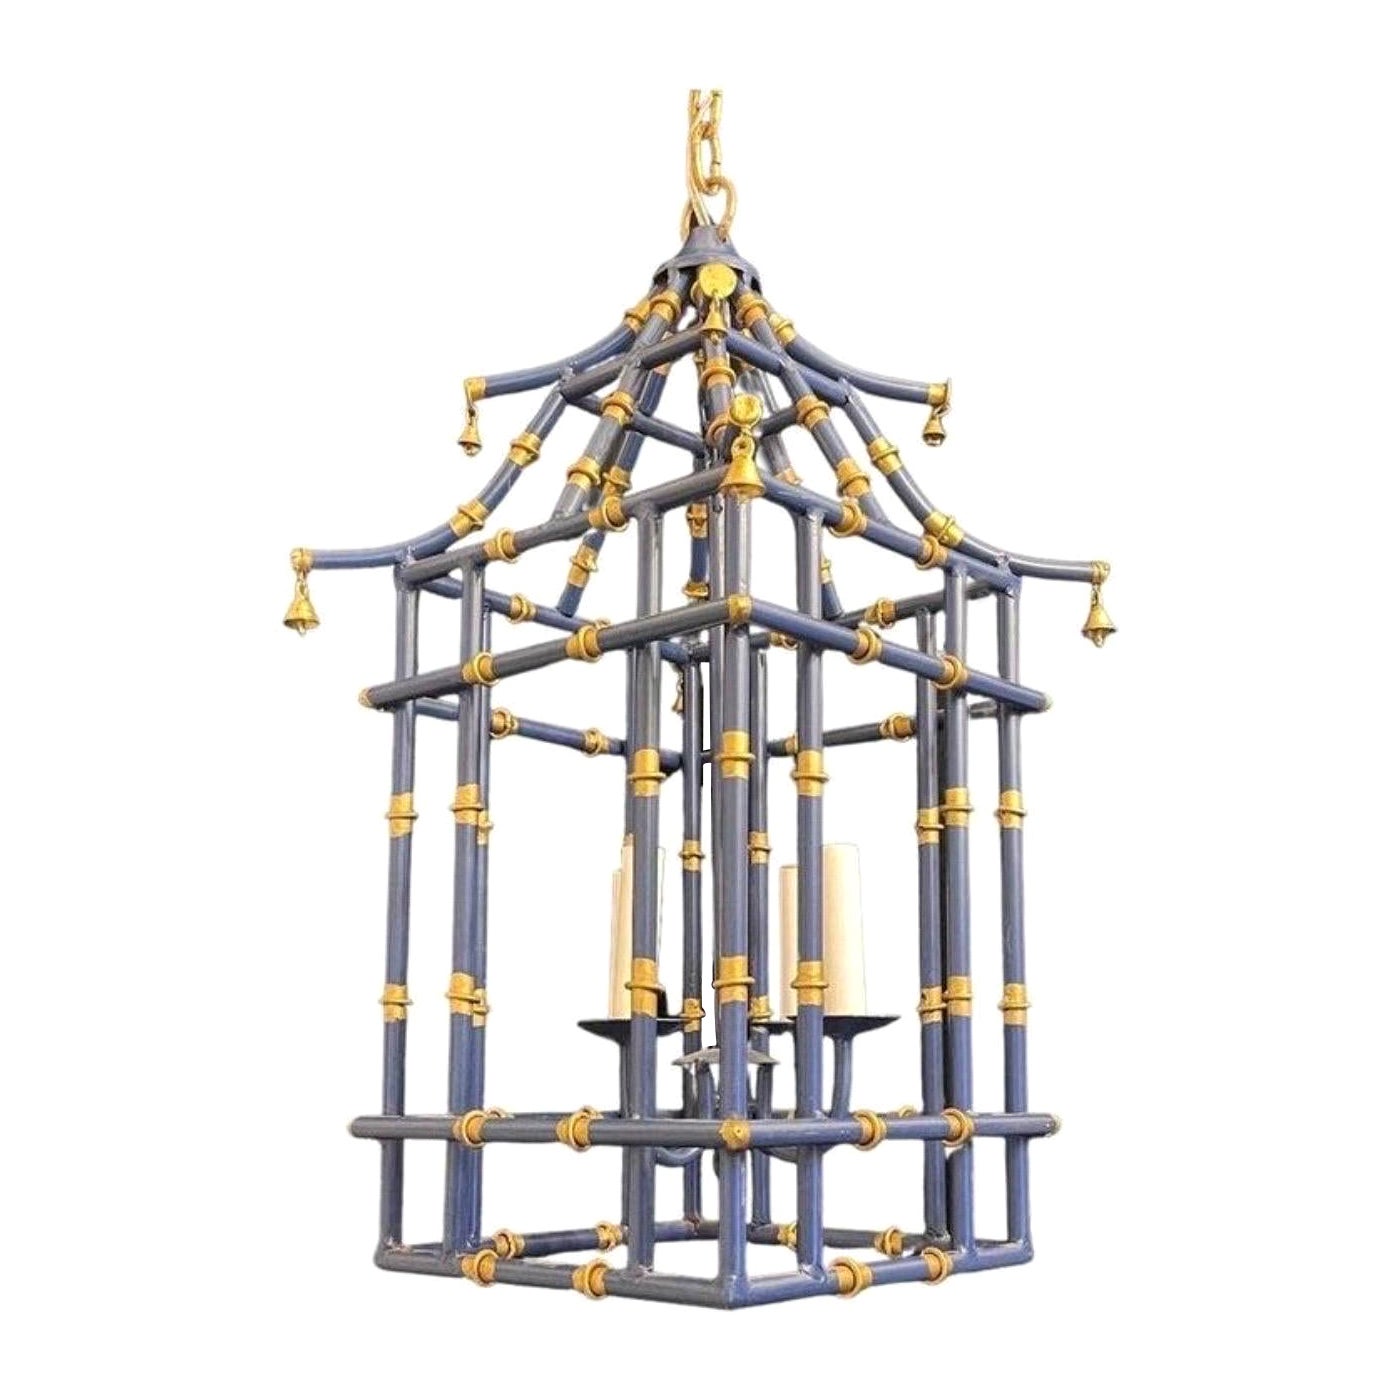 Merveilleuse paire de lanternes chinoiseries en bambou et or doré bleu marine en forme de pagode